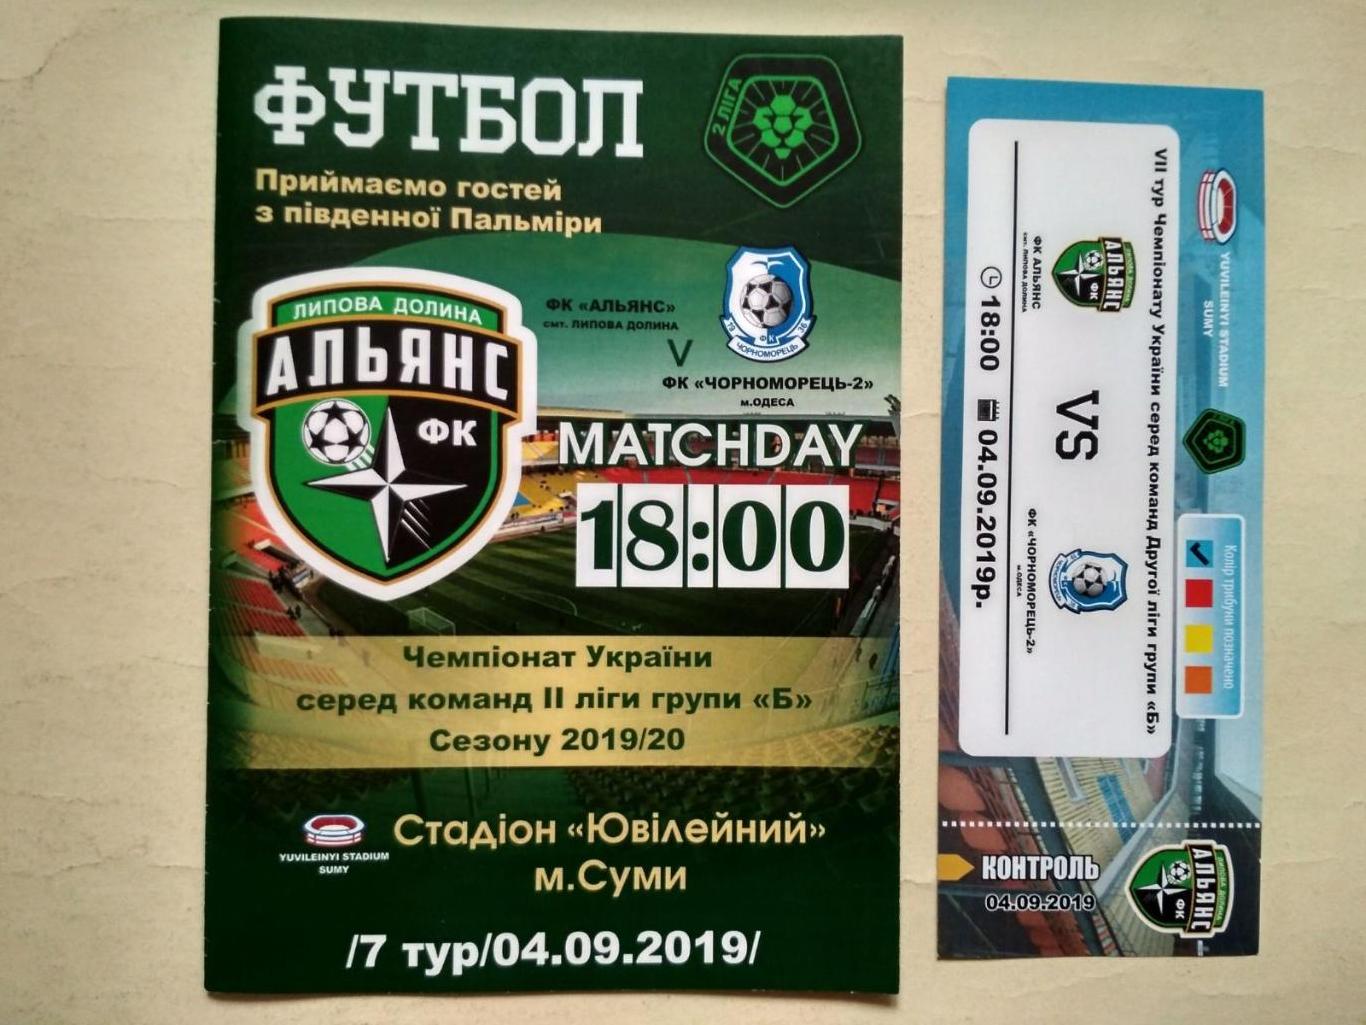 Футбол Альянс Липовая Долина - Черноморец - 2 Одесса 04.09.2019 г.+ билет